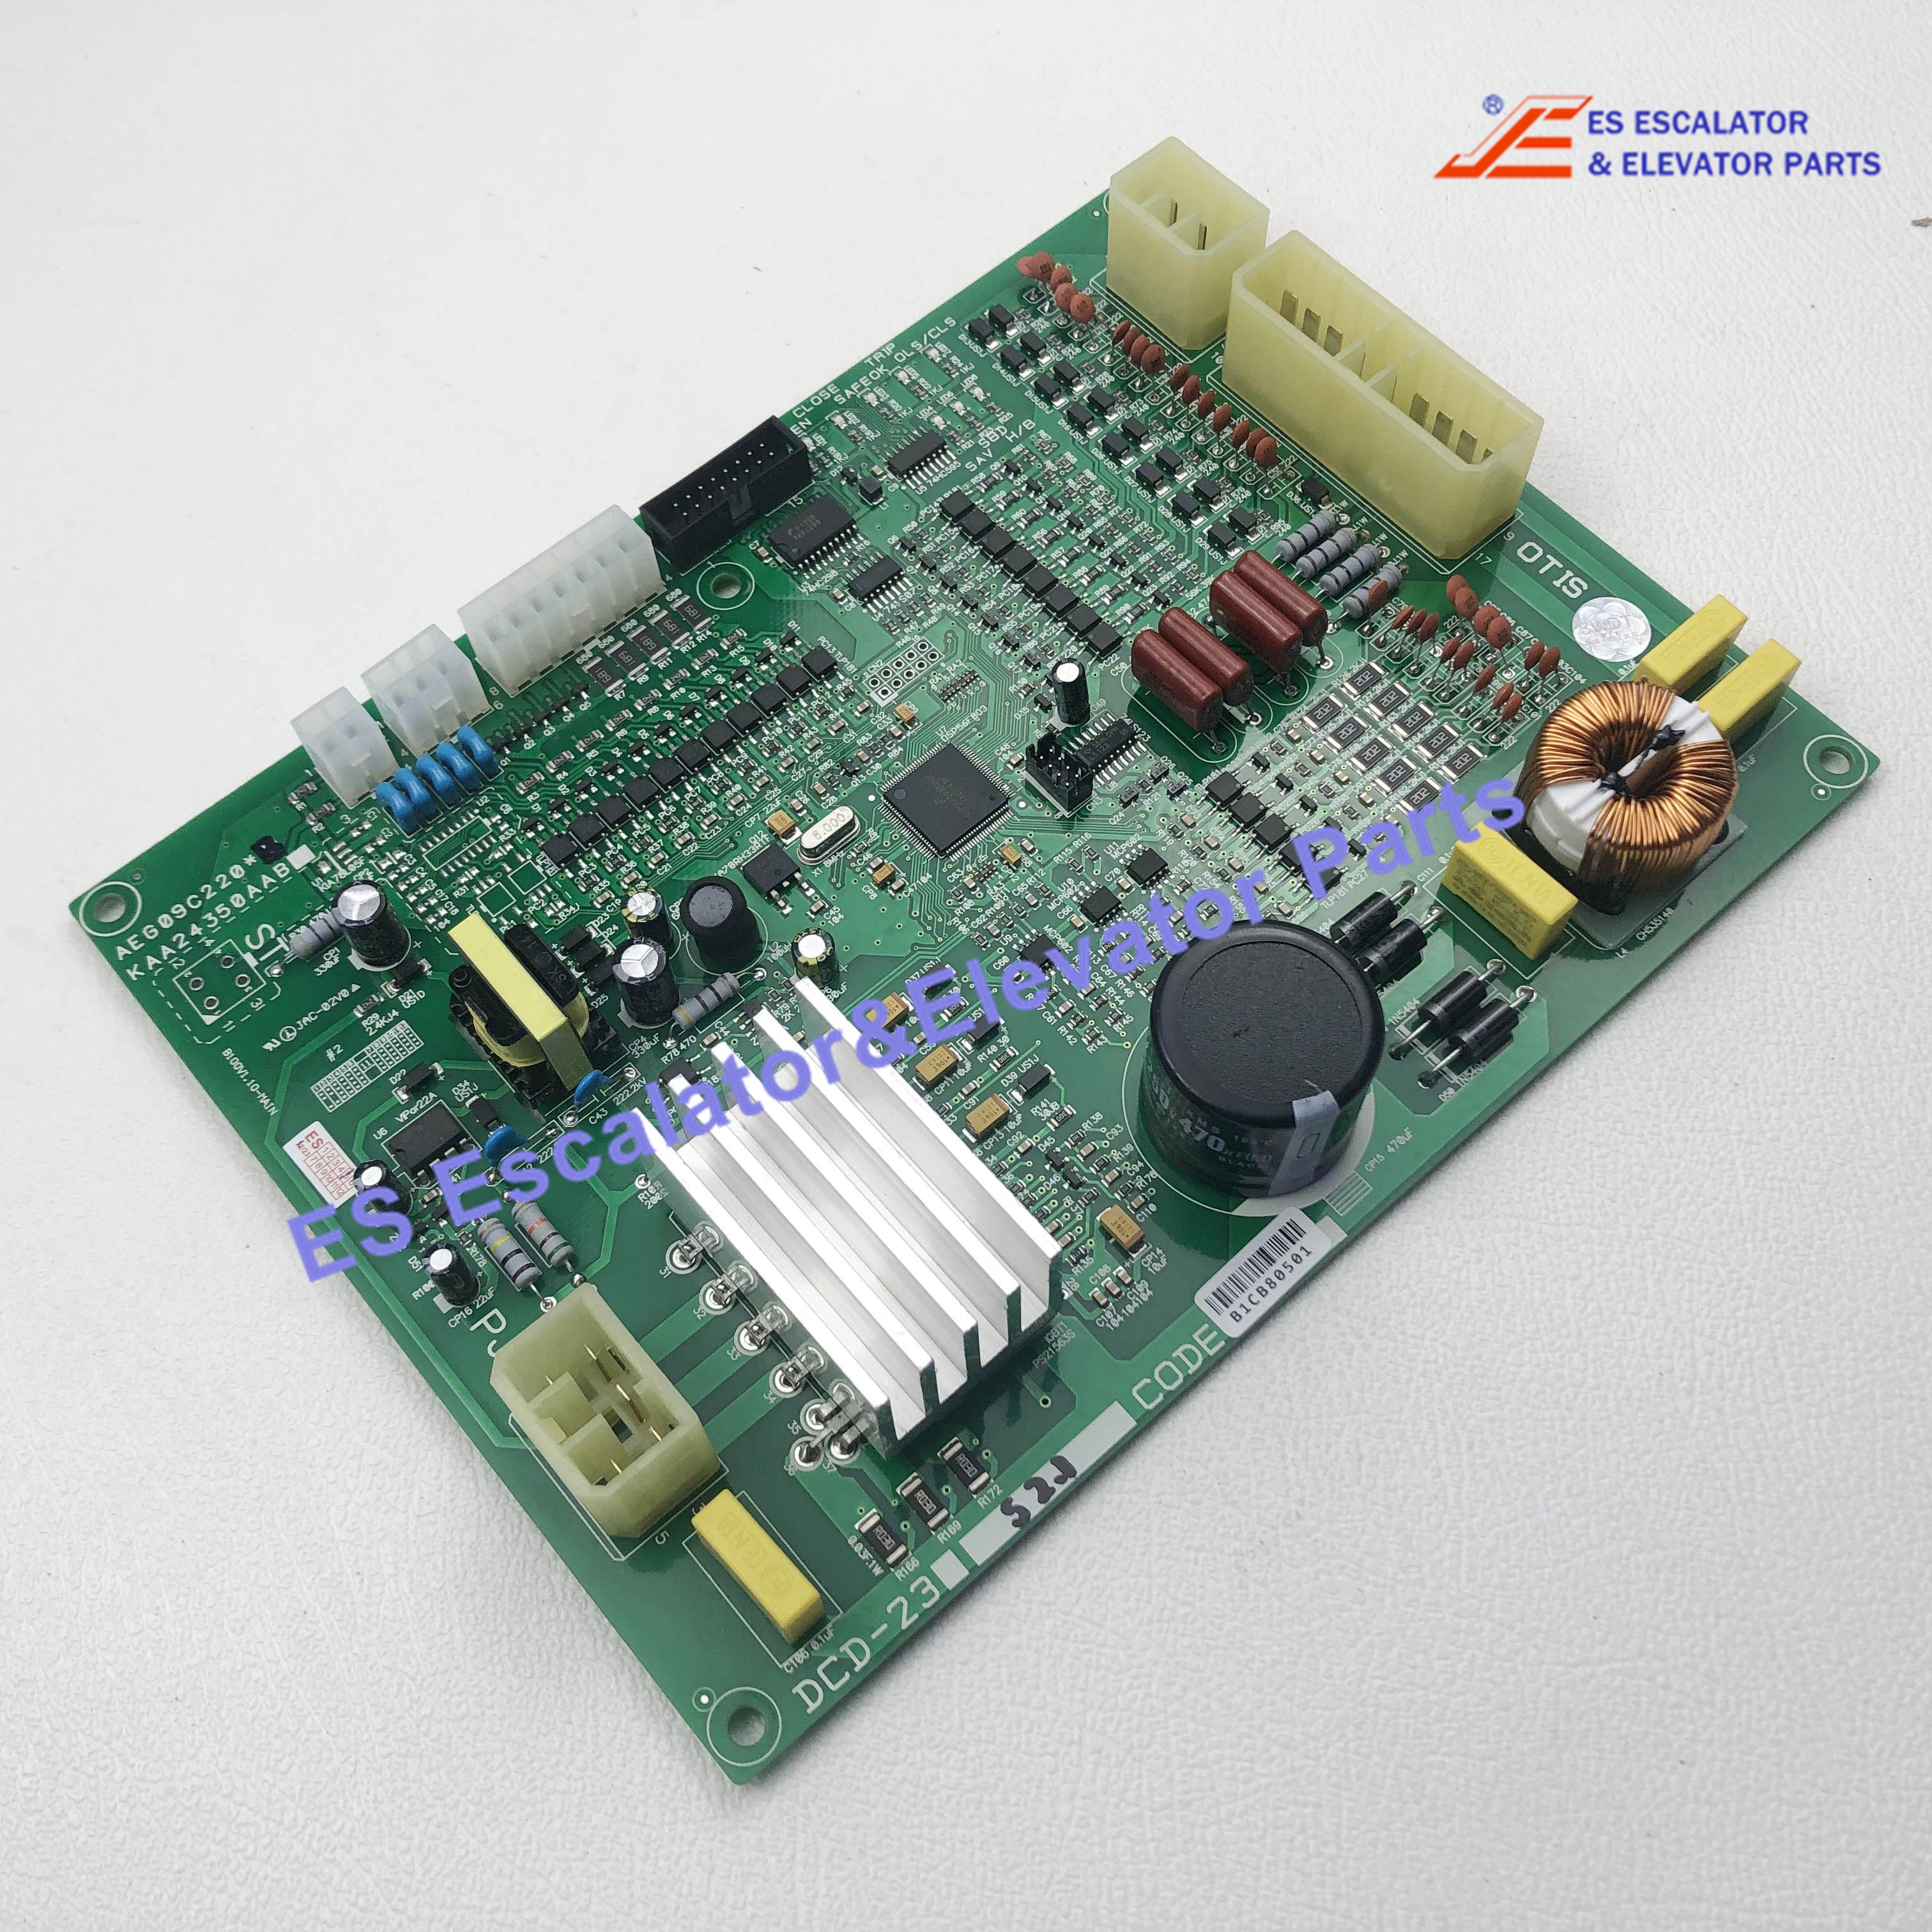 DCD-231 Elevator PCB Board AEG09C220*B Use For Lg/Sigma